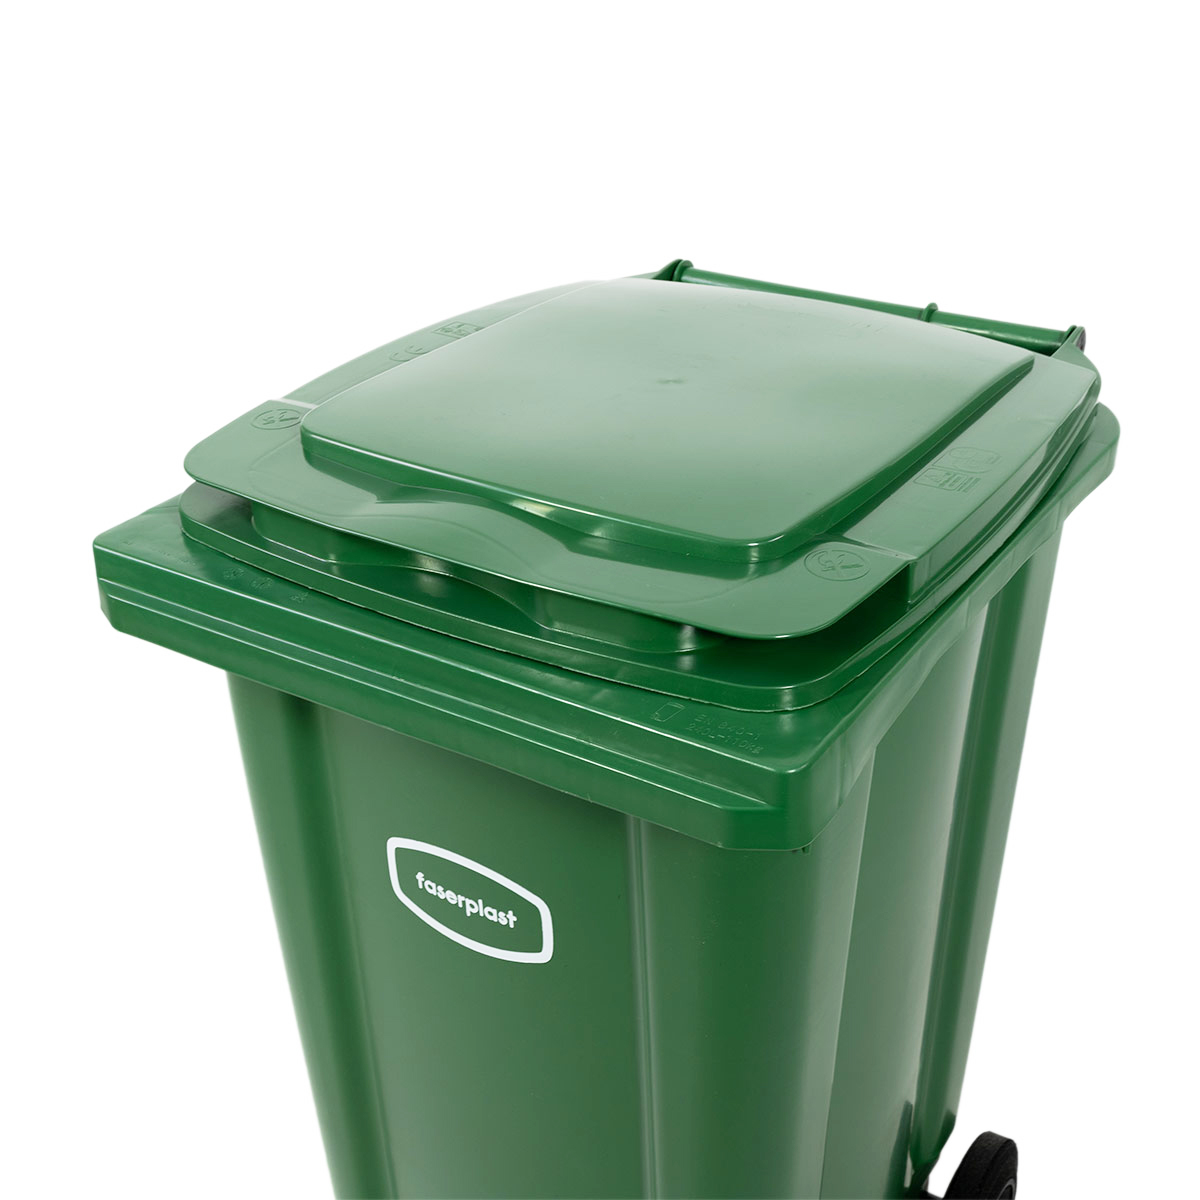 Conteneur de déchets roulants, en PE-HD, vert